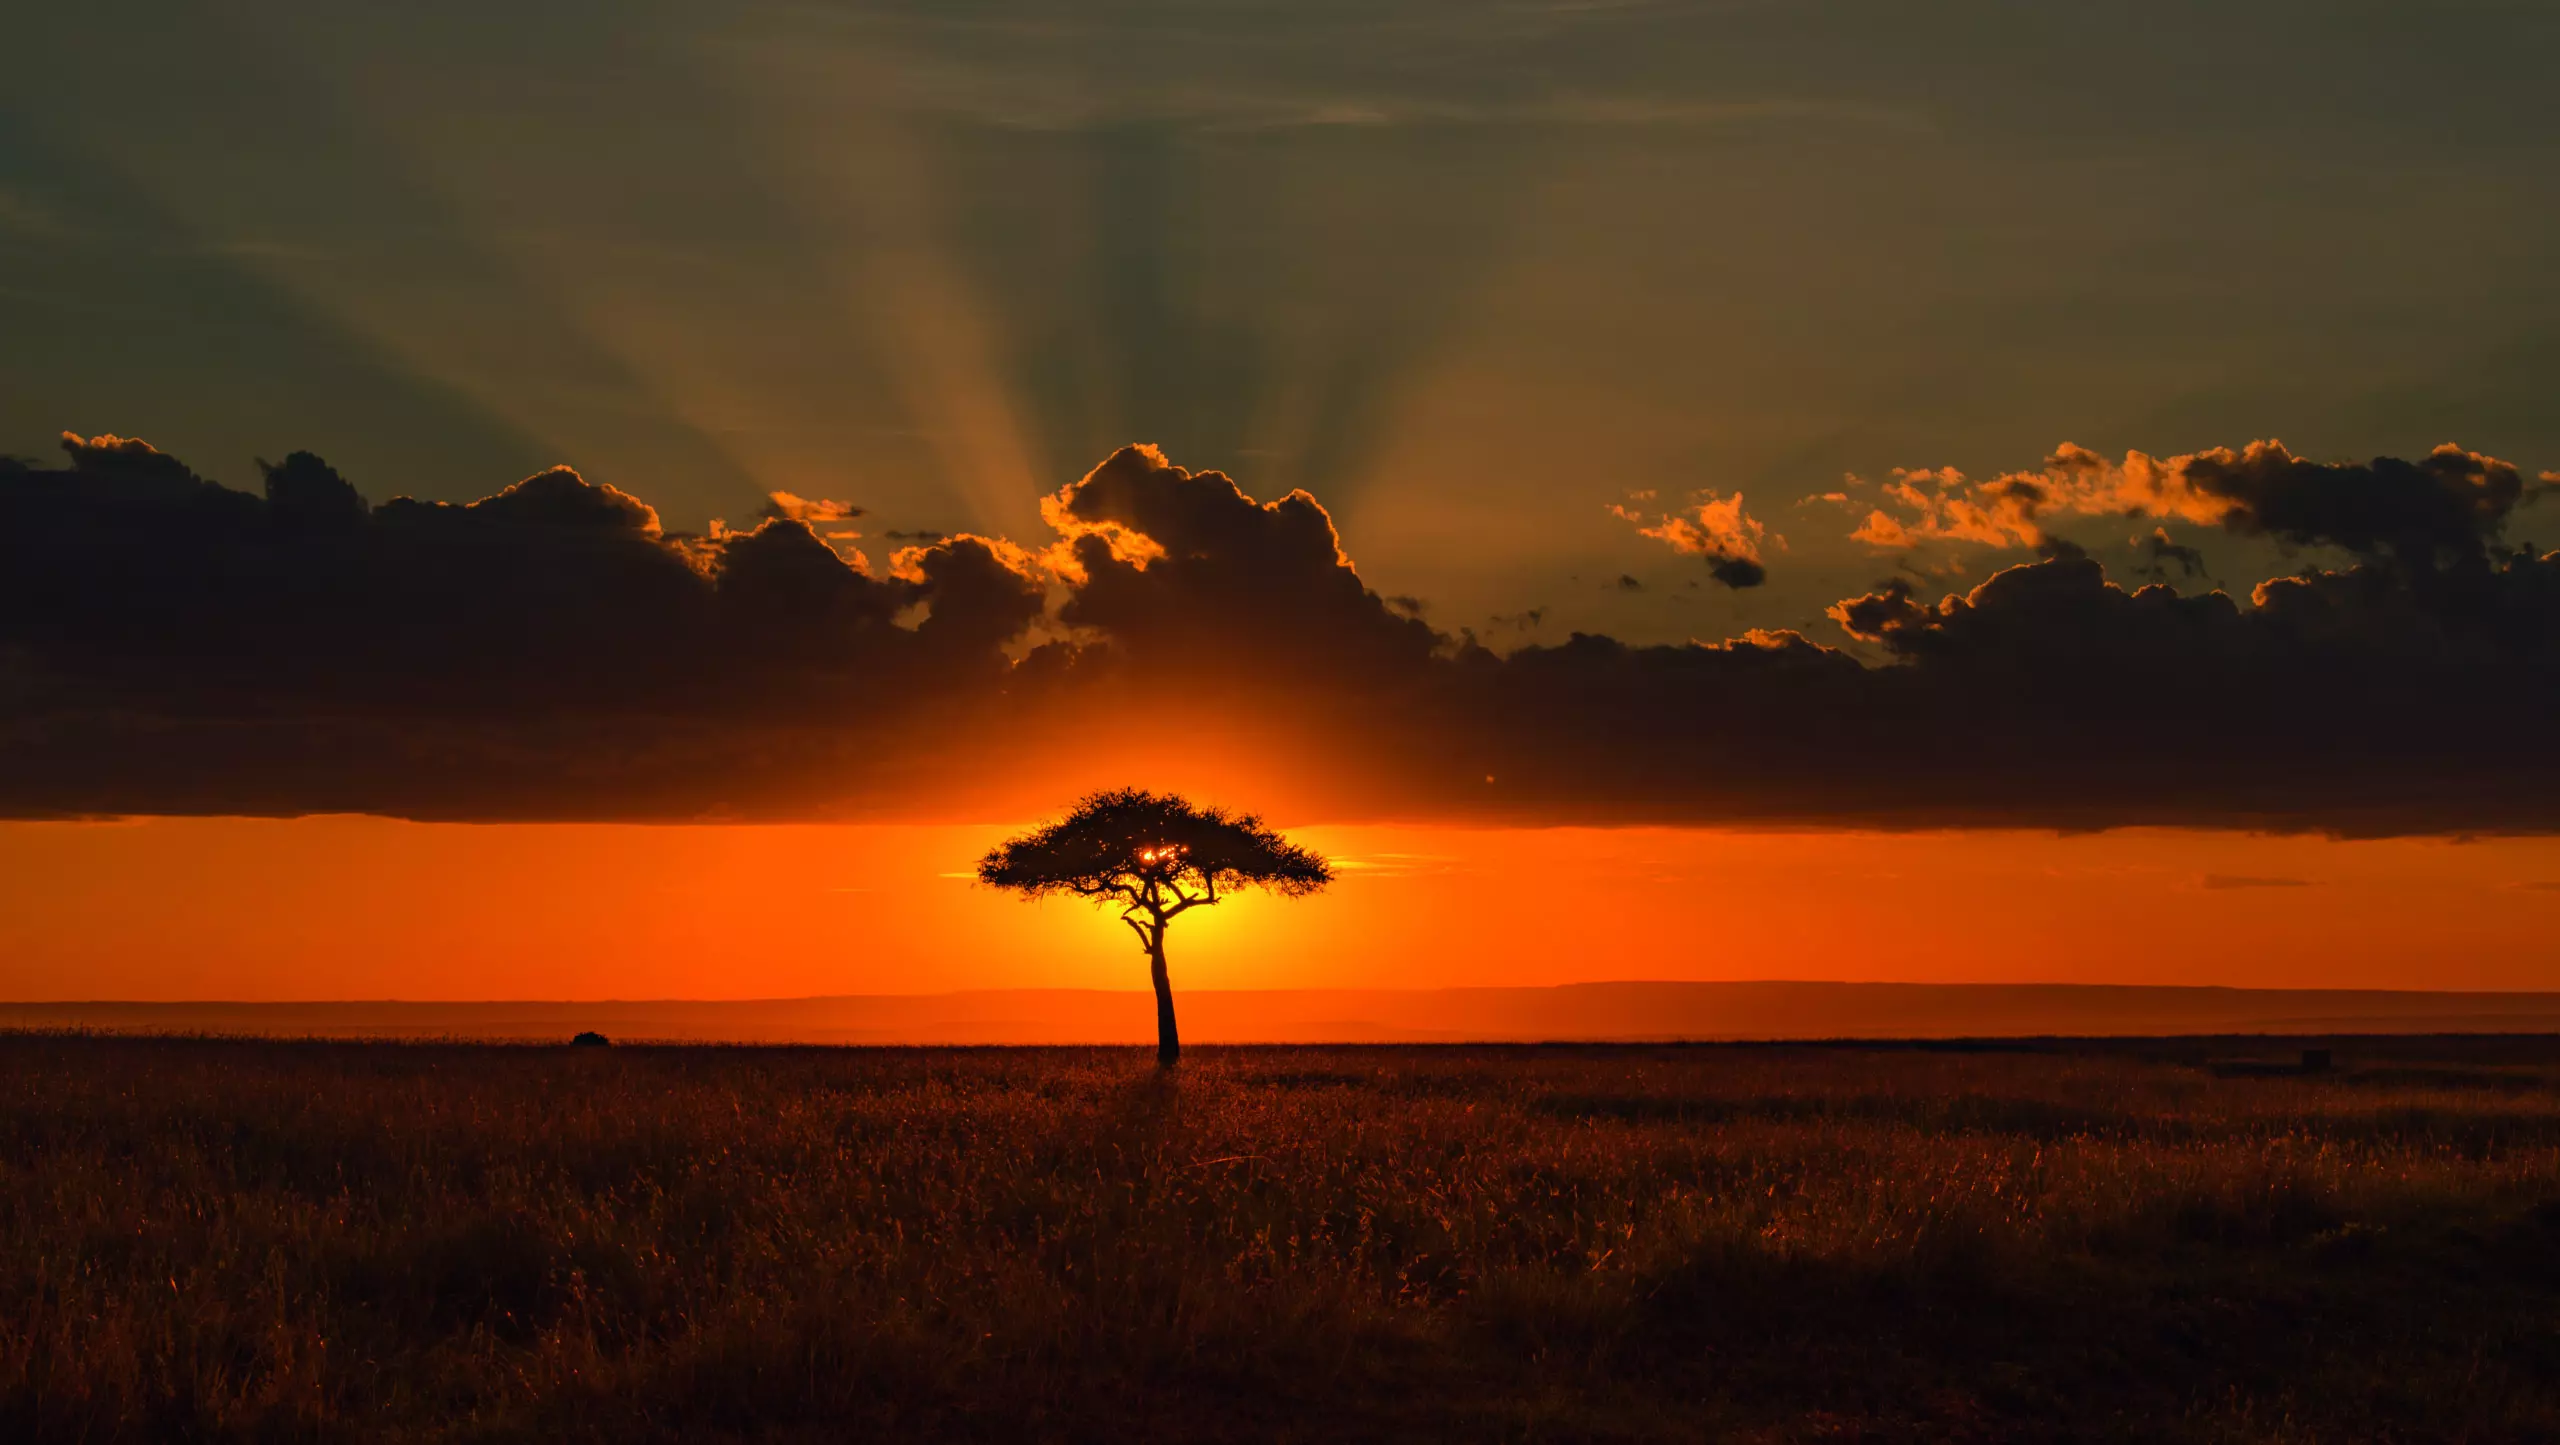 Wandbild (5875) Behind the Acacia Tree by Tony Yu, 1x.com präsentiert: Natur,Landschaften,Bäume,Afrika